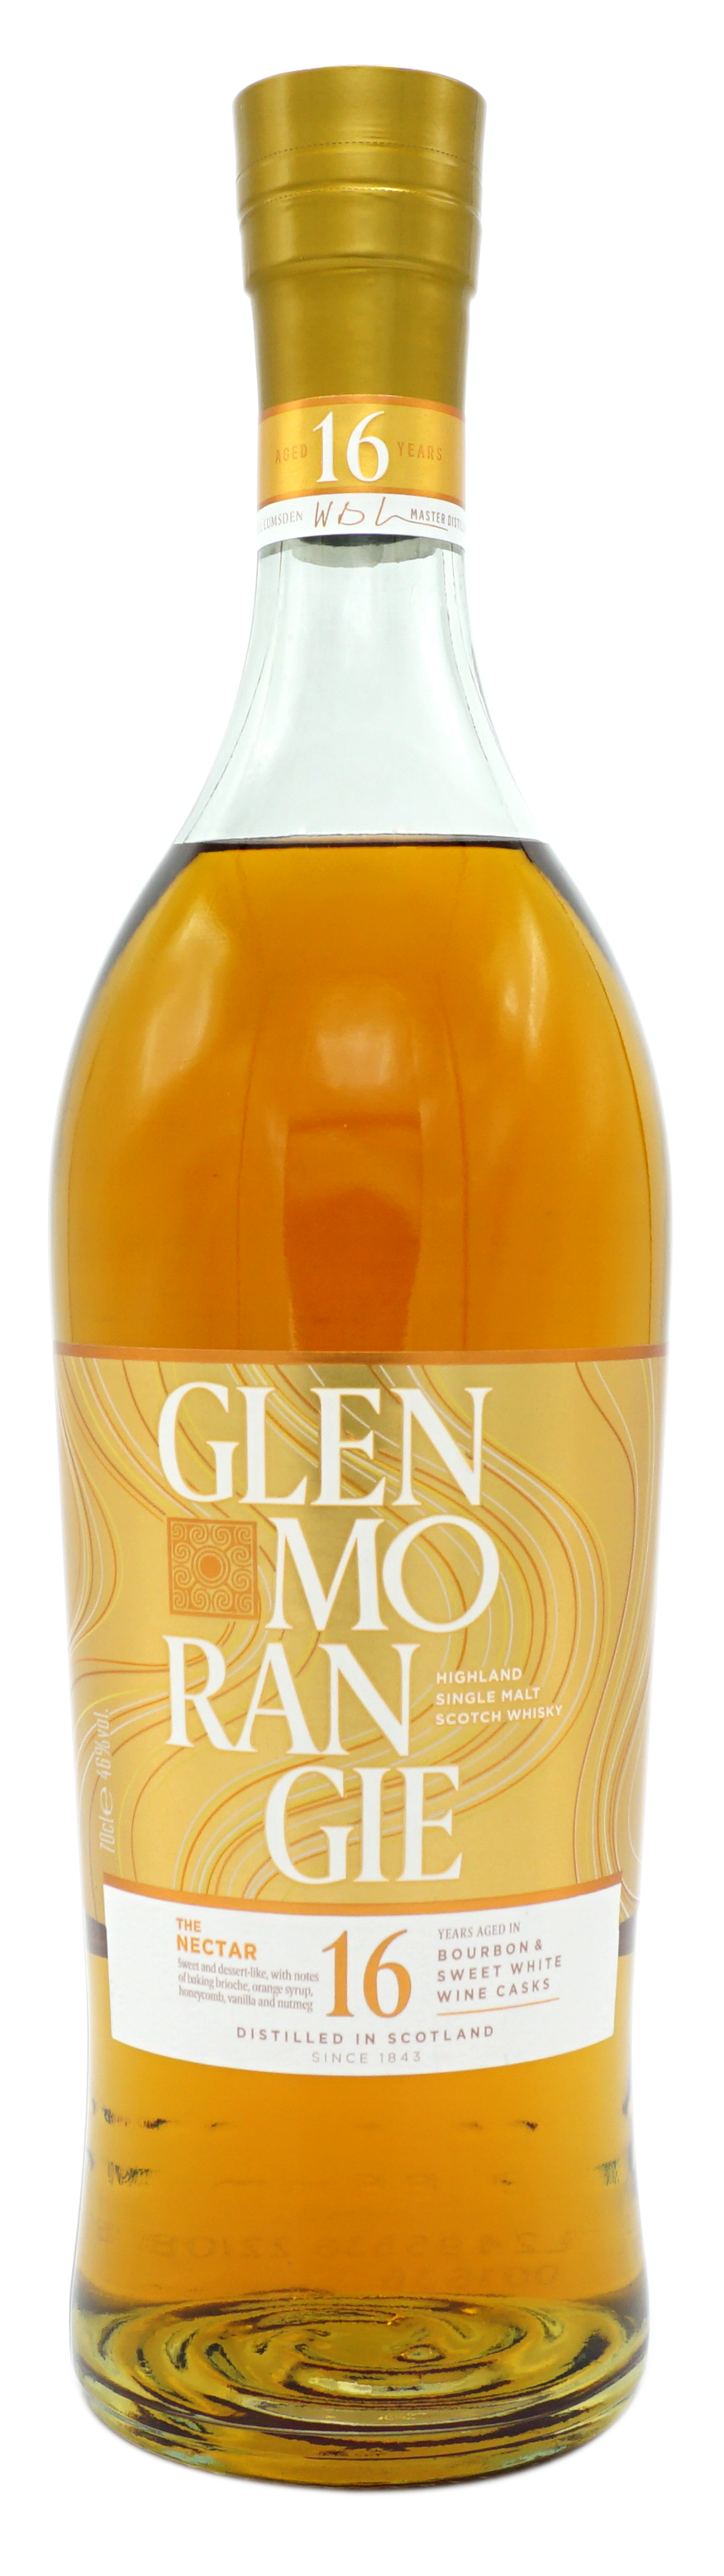 GlenMorangie TheNectar 16y Bourbon&SweetWineCask 46% Fles